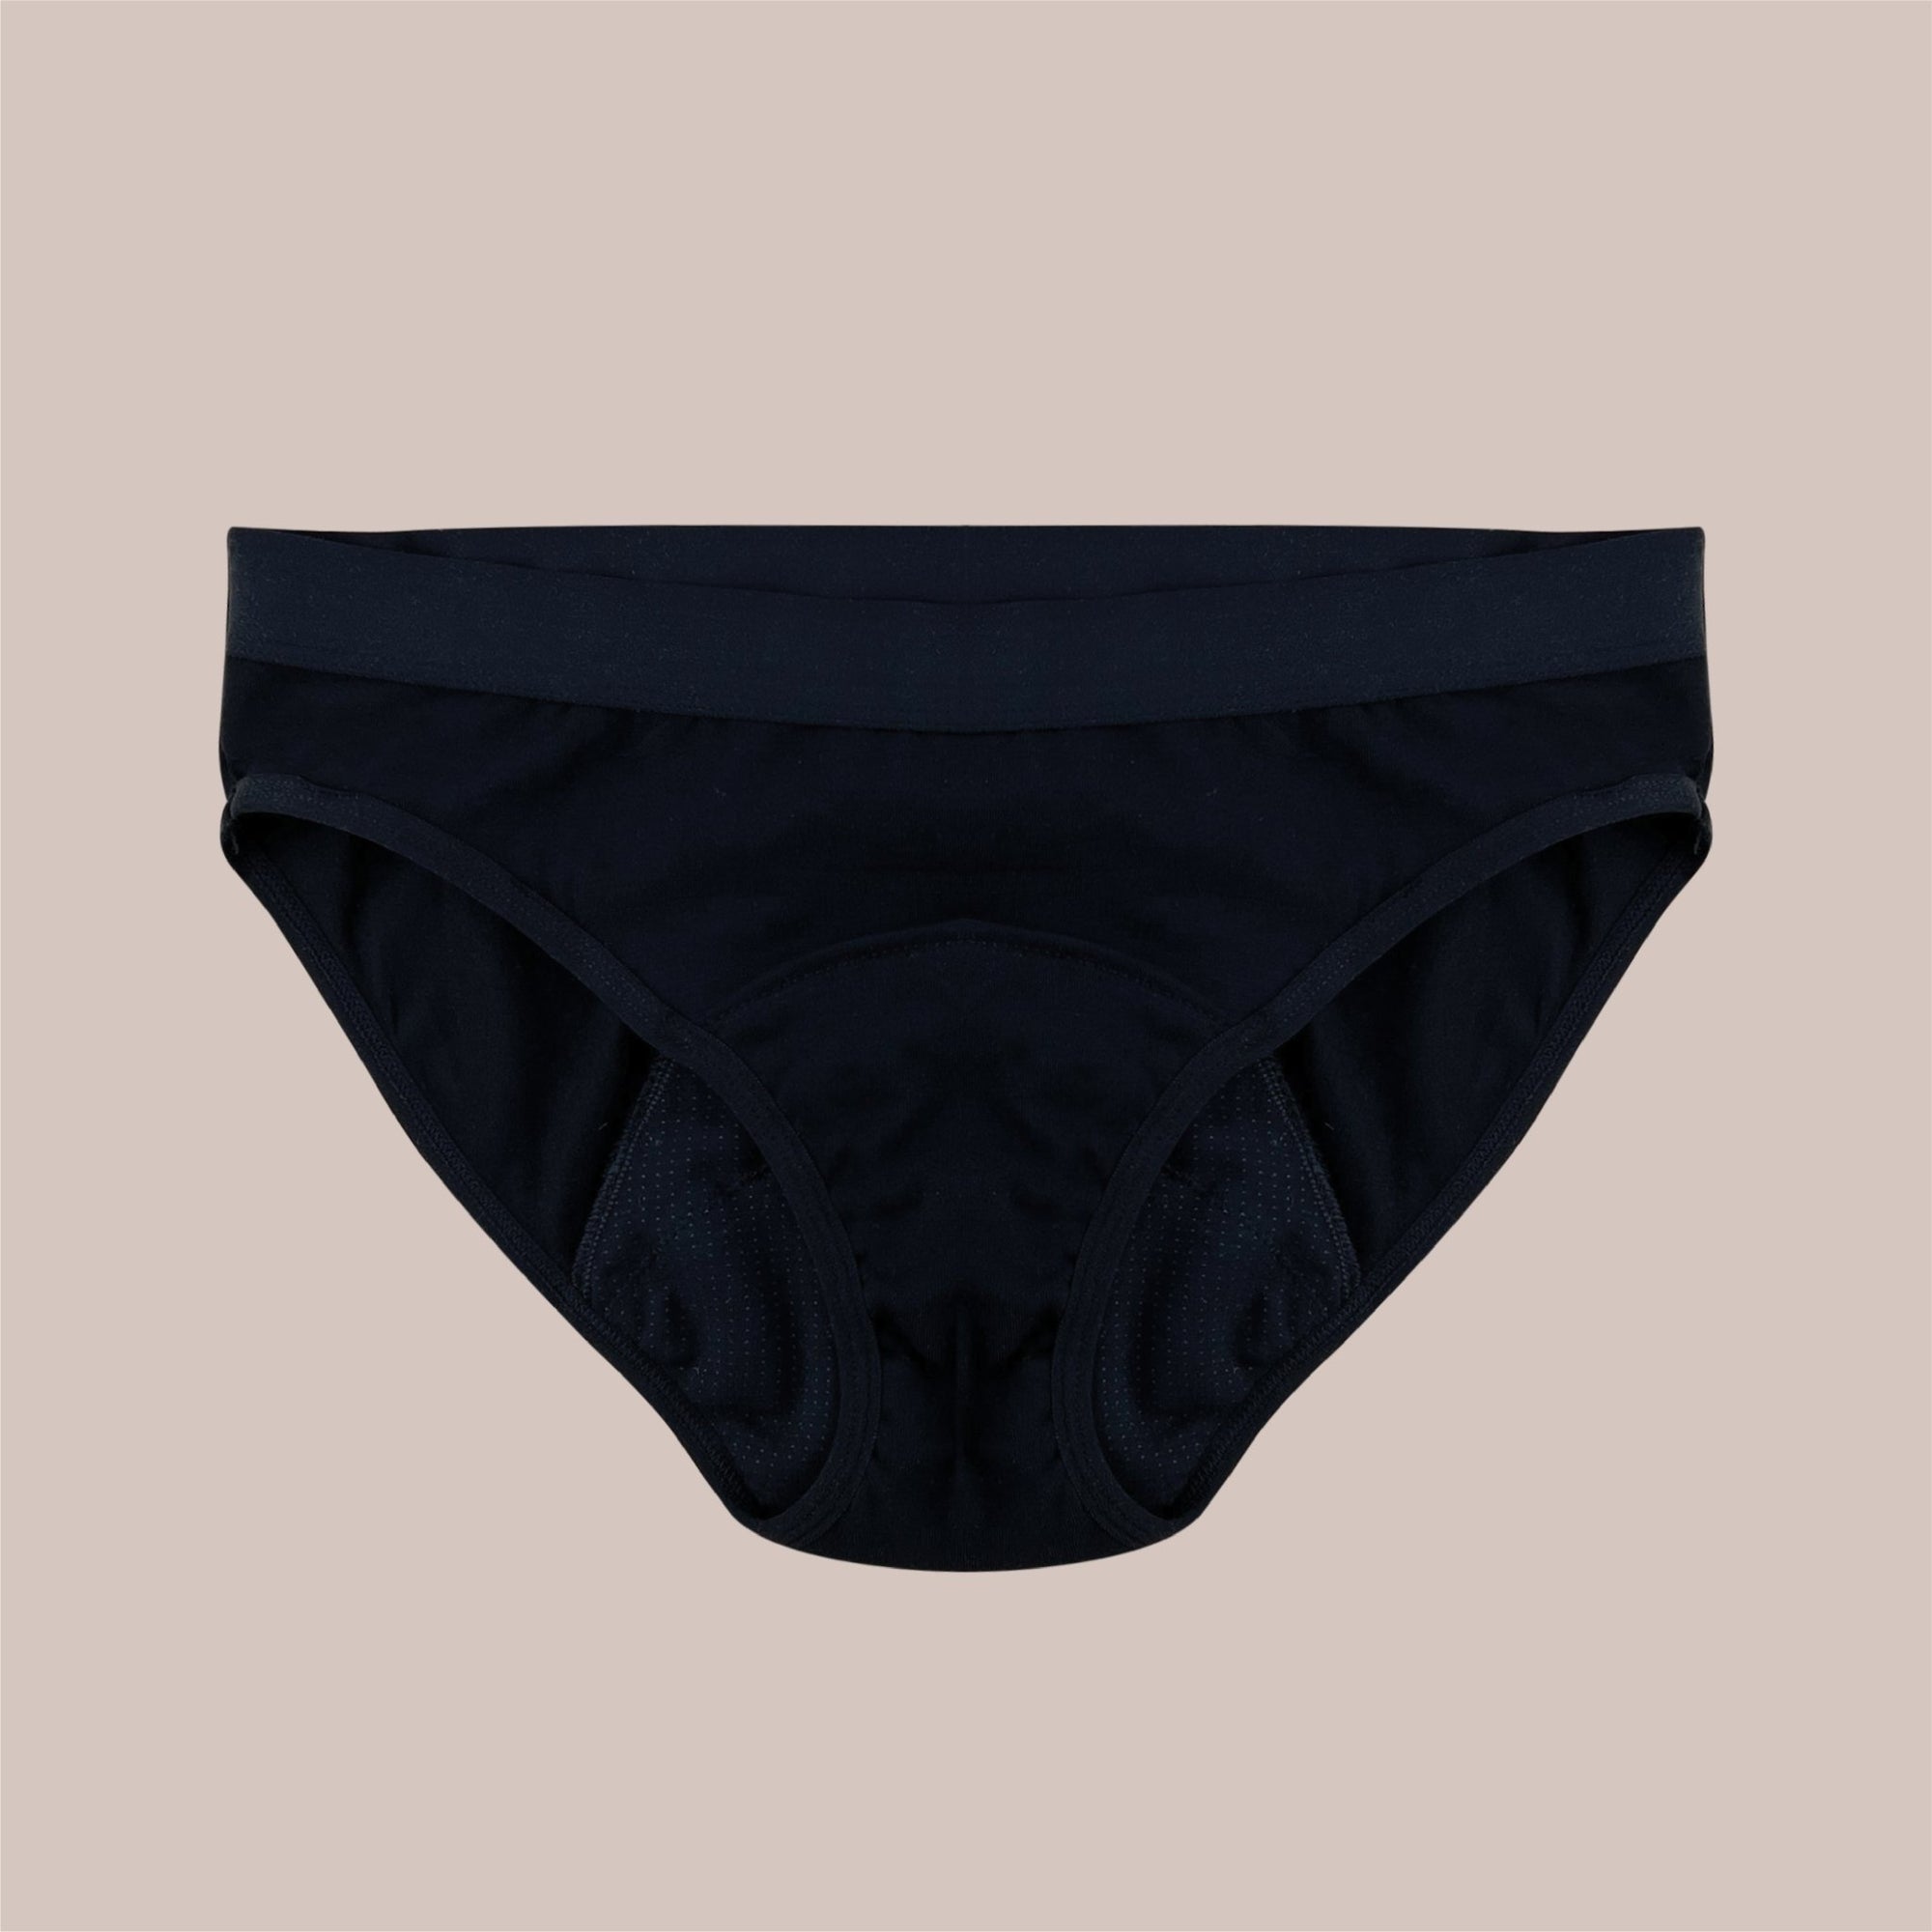 Period Underwear – My Cup